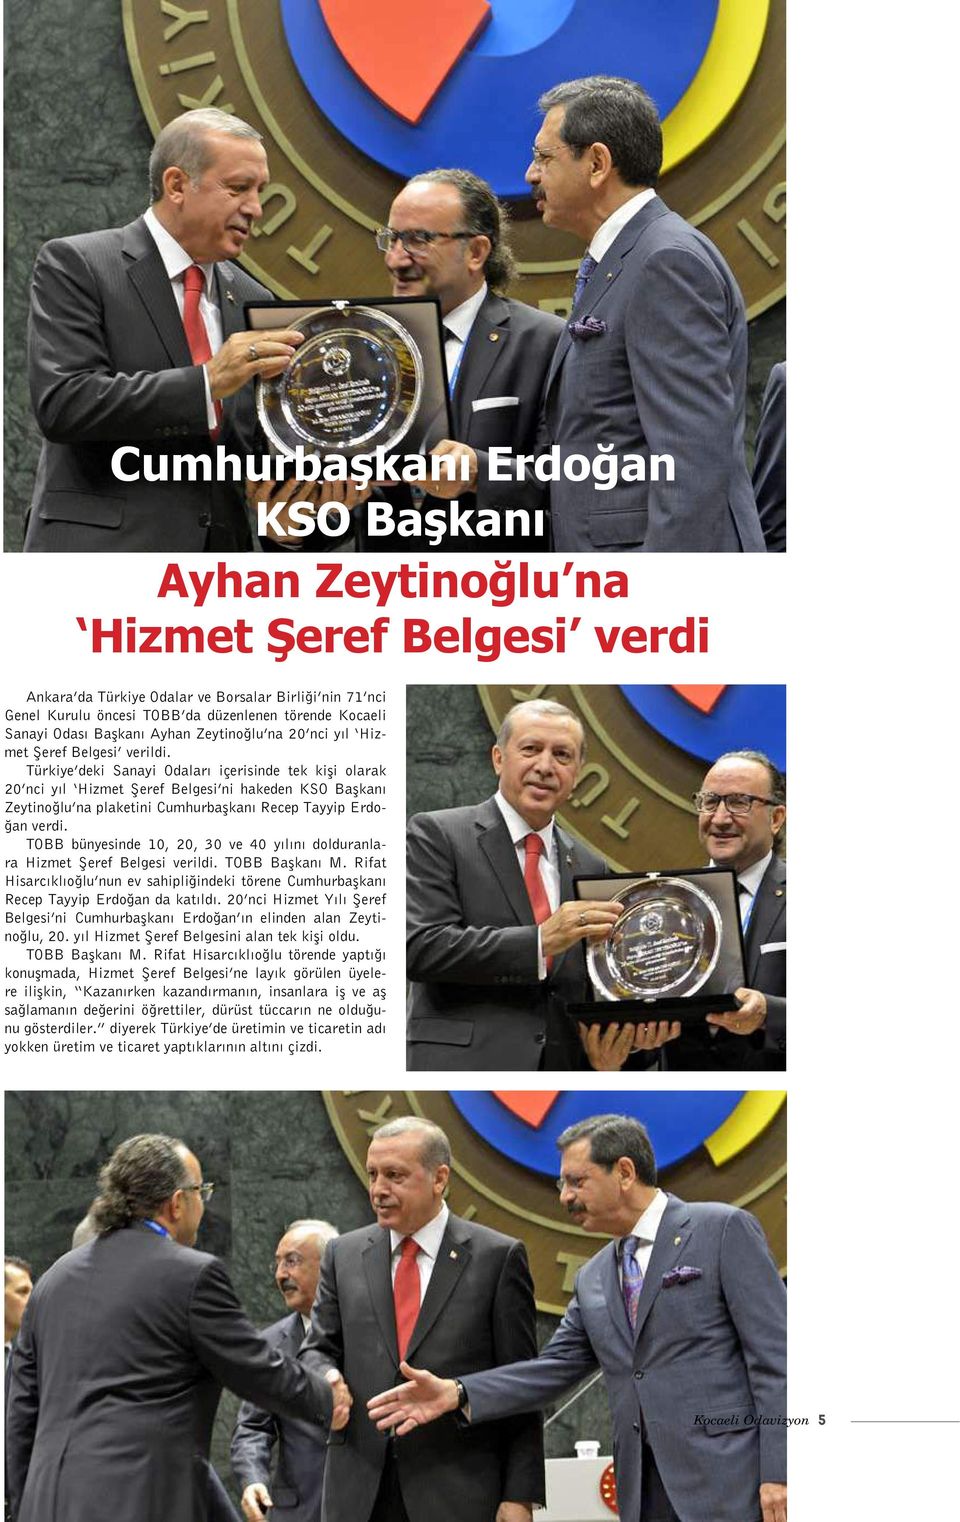 Türkiye deki Sanayi Odaları içerisinde tek kişi olarak 20 nci yıl Hizmet Şeref Belgesi ni hakeden KSO Başkanı Zeytinoğlu na plaketini Cumhurbaşkanı Recep Tayyip Erdoğan verdi.